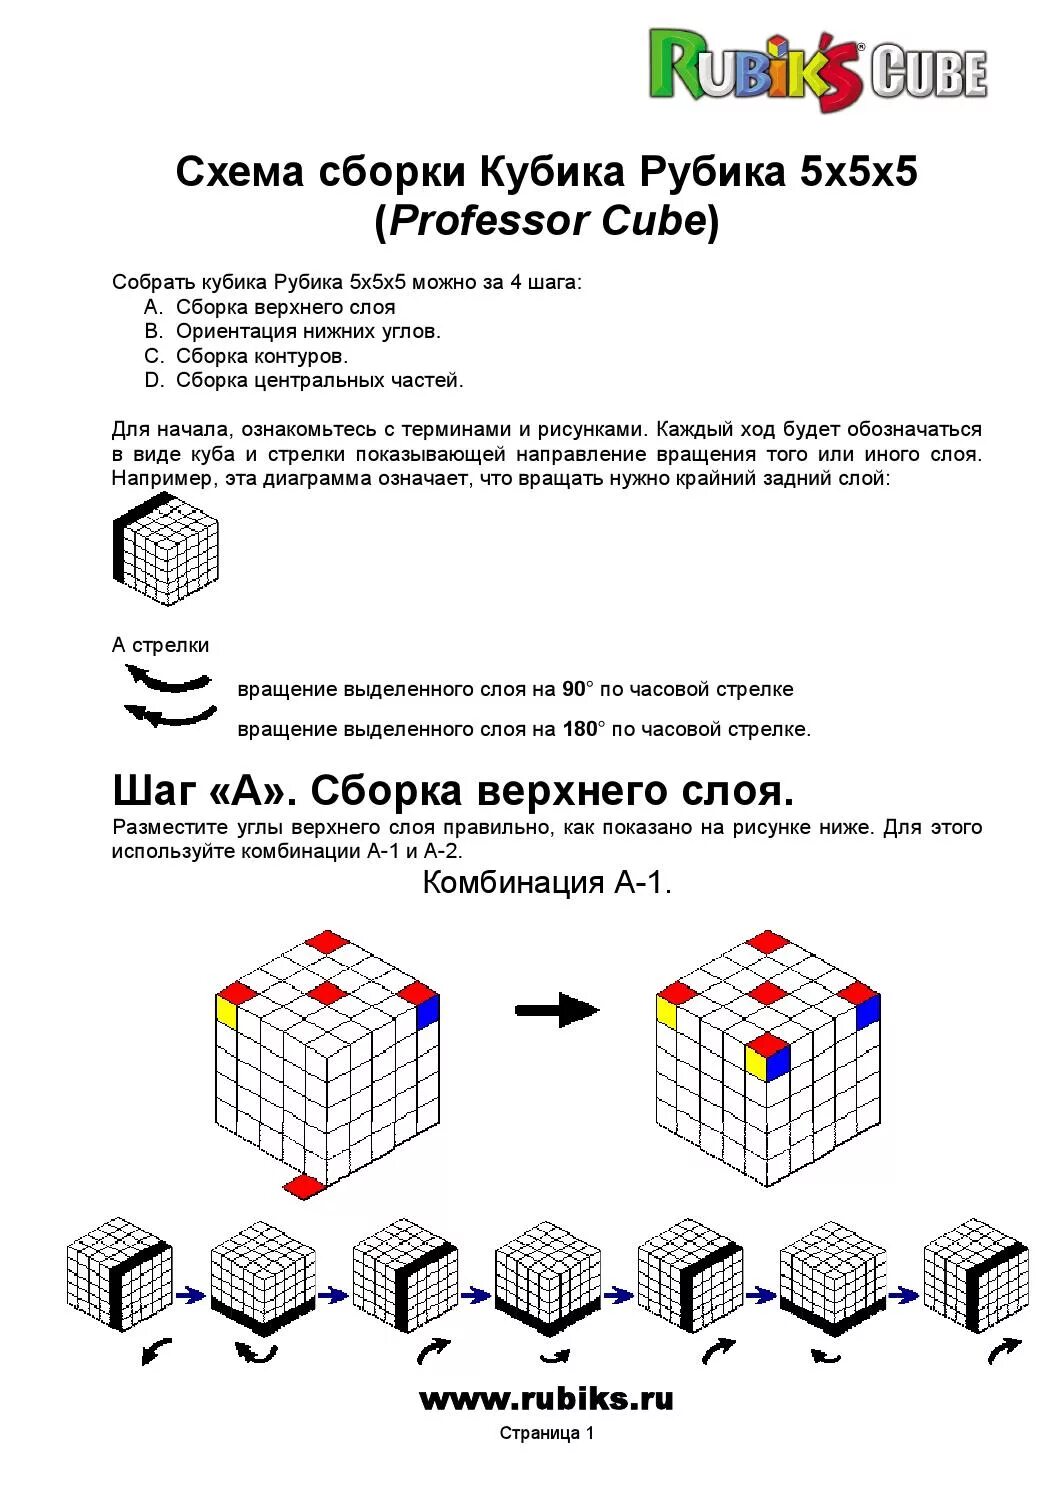 Как собрать рубика 4х4. Кубик Рубика 5х5 алгоритм. Формулы кубика Рубика 5х5. Кубик Рубика 5х5 схема. Формулы кубика Рубика 4х4 схема сборки.